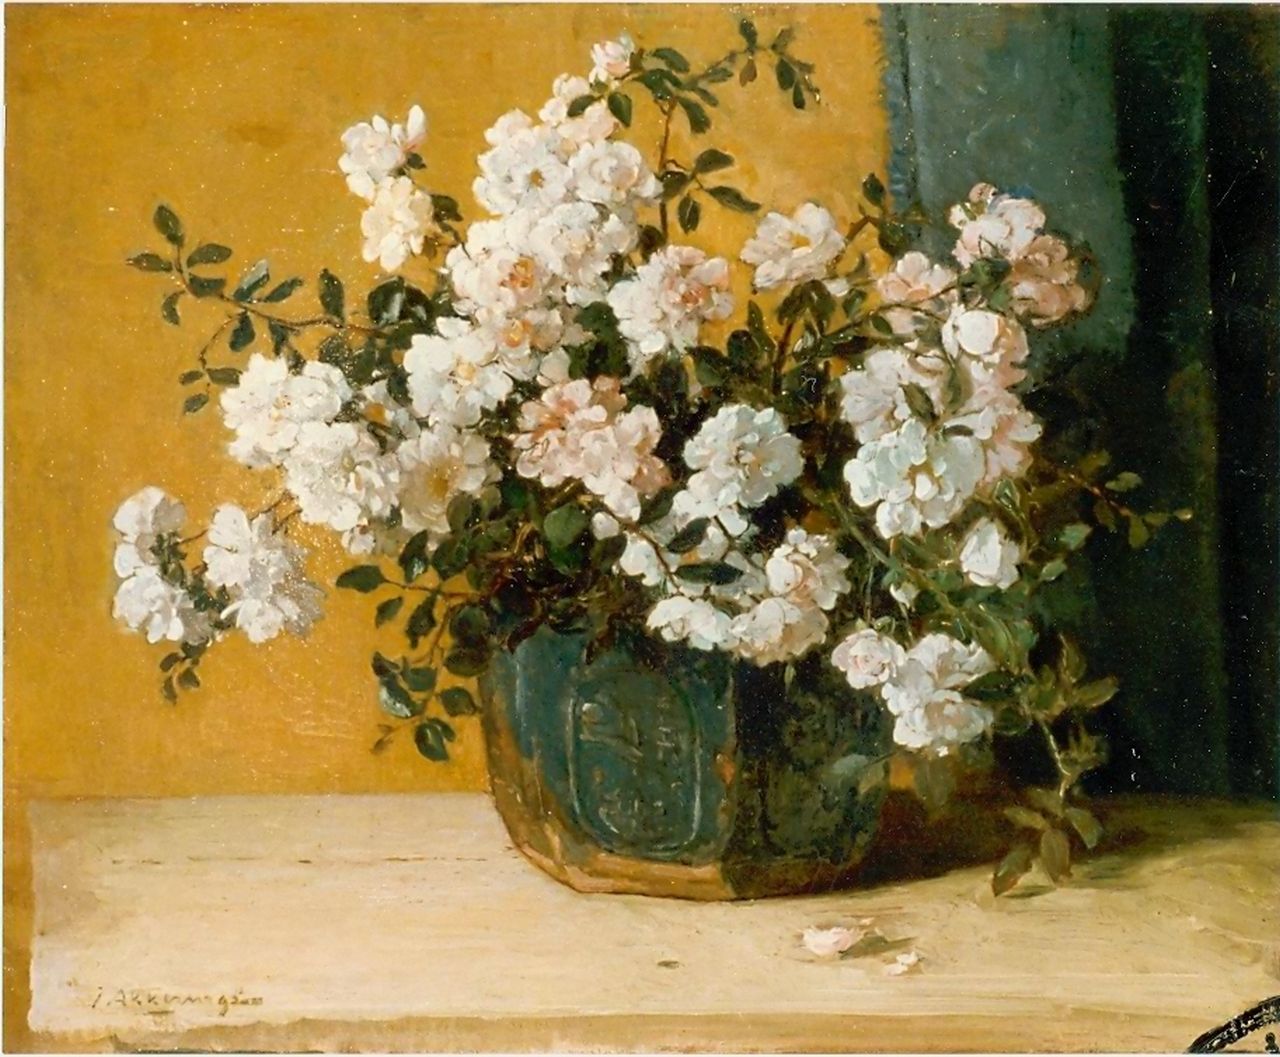 Akkeringa J.E.H.  | 'Johannes Evert' Hendrik Akkeringa, A still life of roses, oil on canvas 43.0 x 53.0 cm, signed l.l.